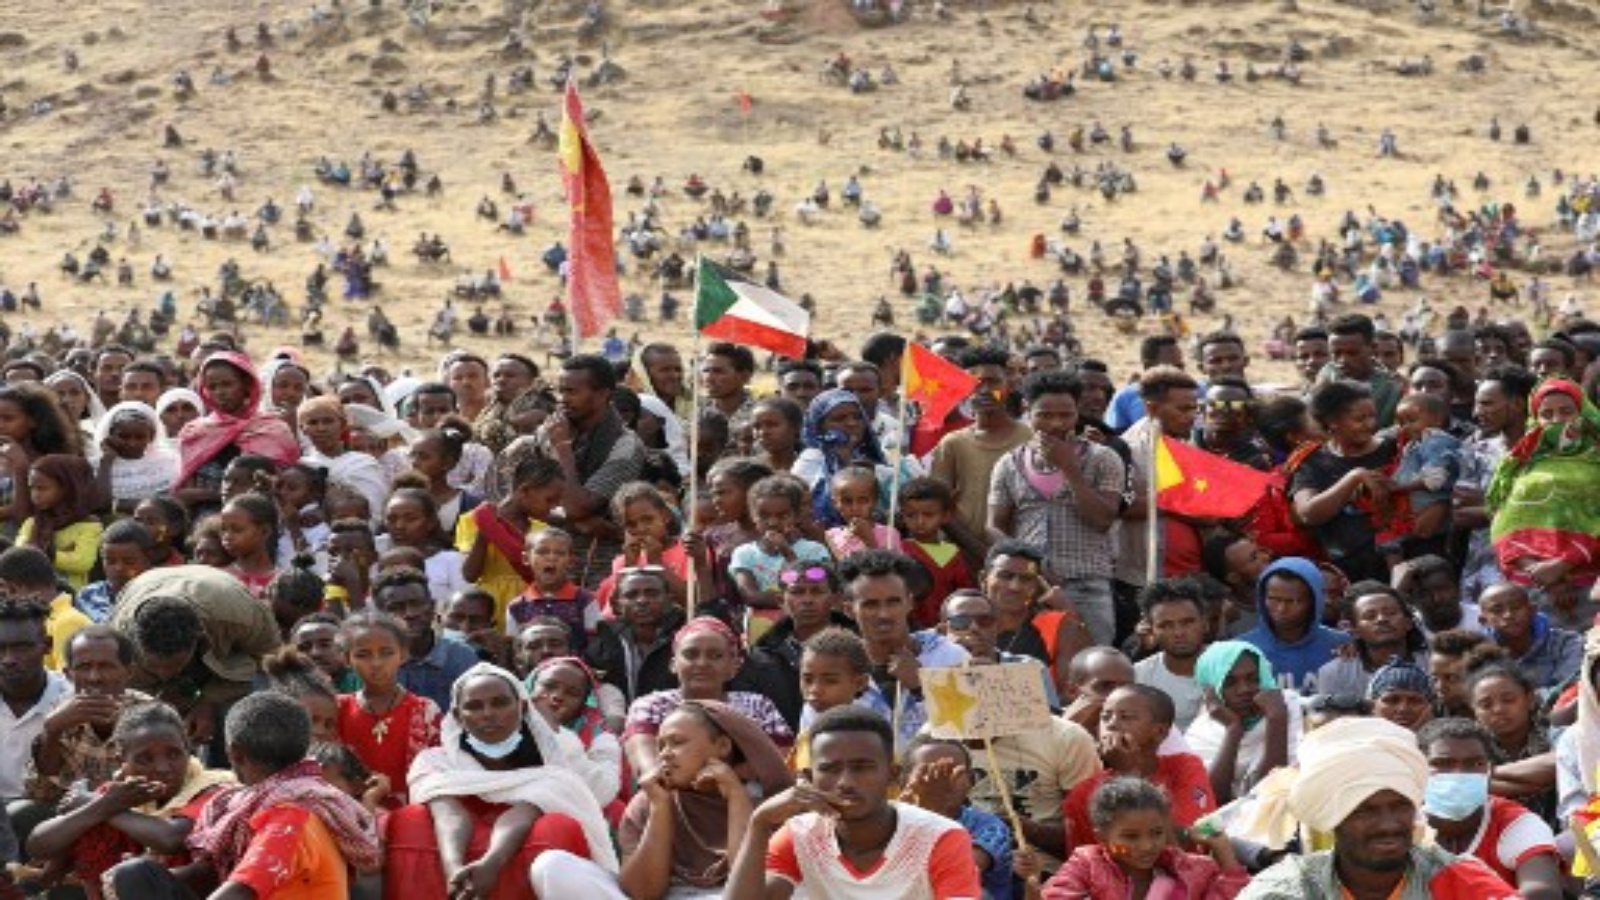 لاجئون إثيوبيون يجتمعون للاحتفال بالذكرى السادسة والأربعين للجبهة الشعبية لتحرير تيغراي في مخيم أم ركبة للاجئين في القضارف ، شرق السودان ، في 19 فبراير 2021.